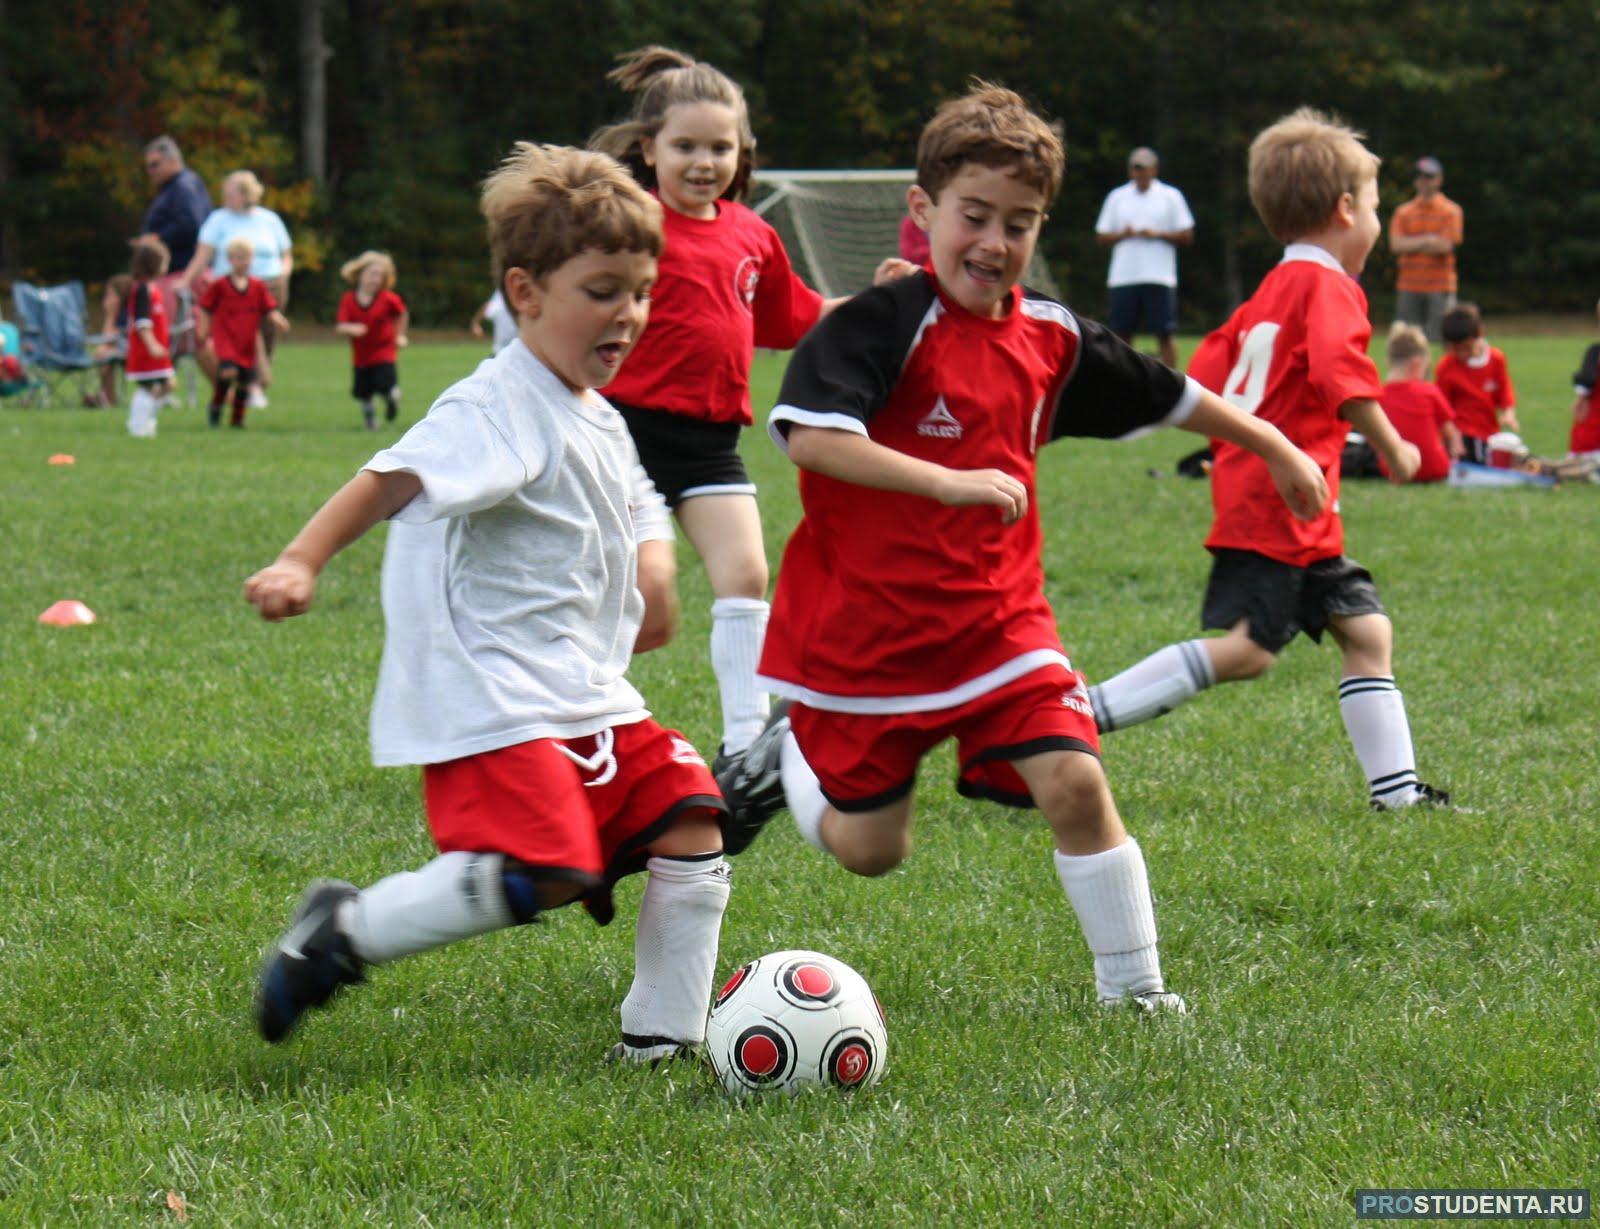 Ученики играют в футбол